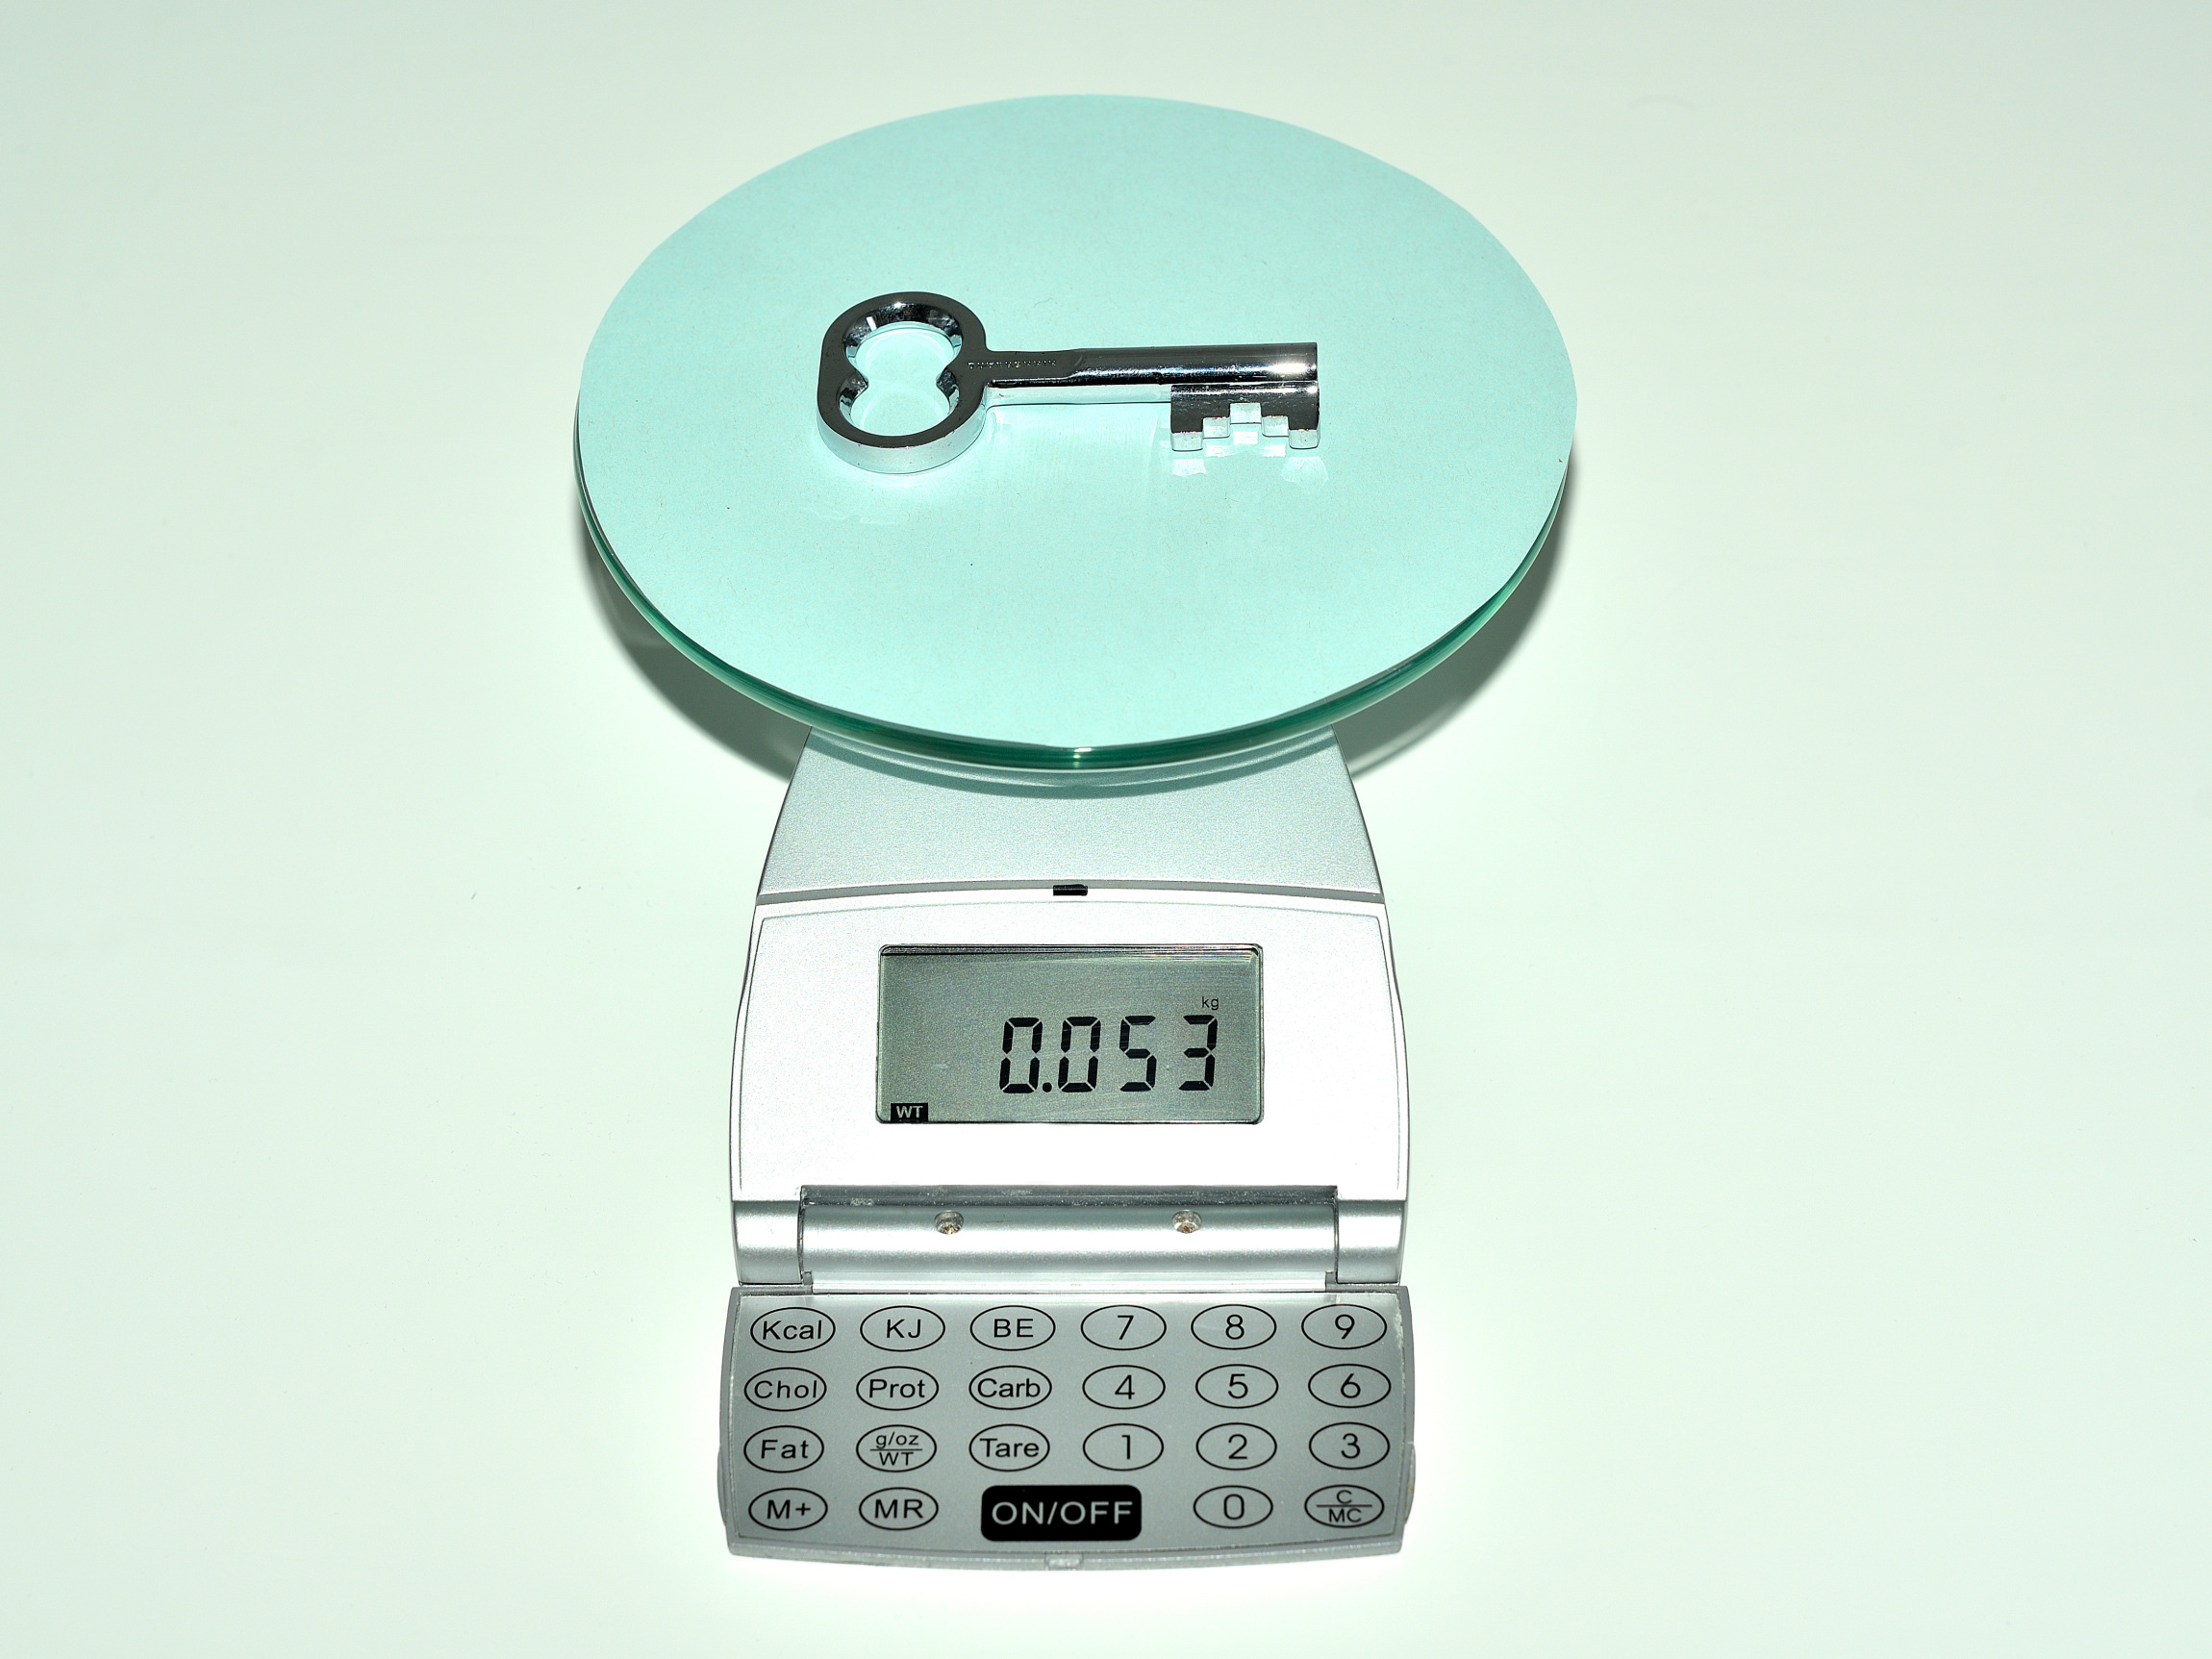 La imagen muestra una báscula, sobre la cual hay una llave metálica, que pesa 53 gramos